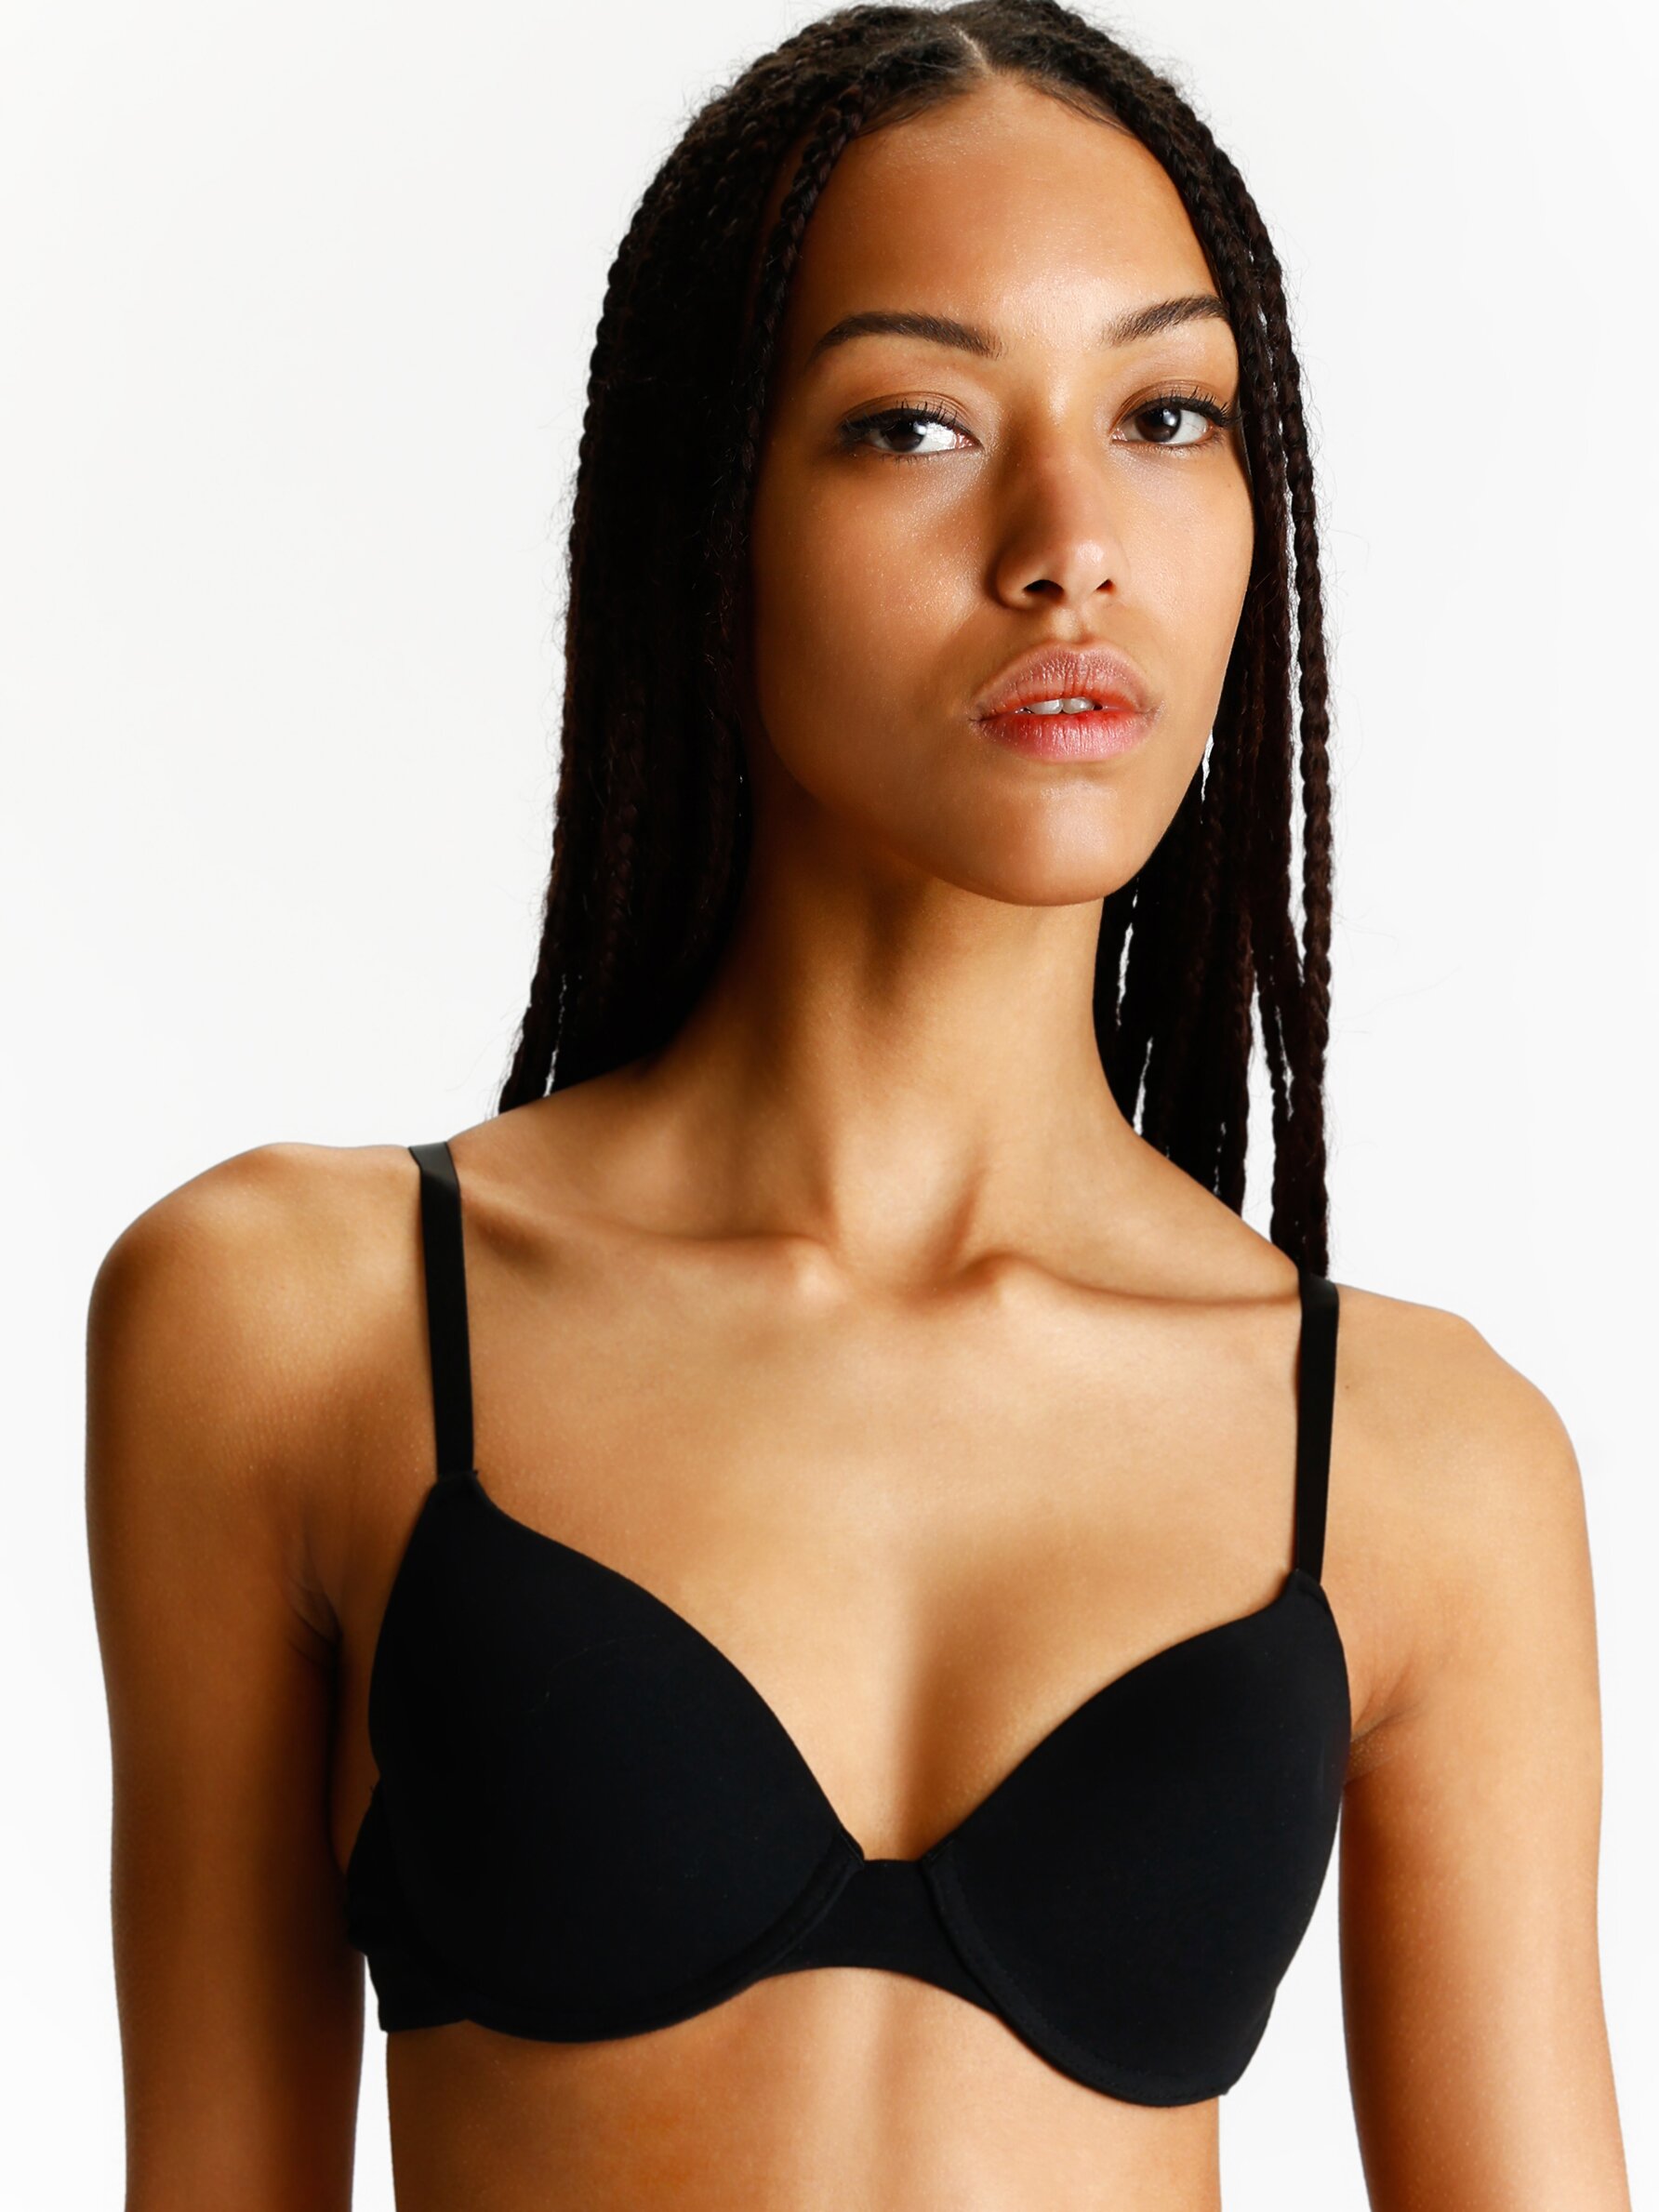 Bras / Lingerie Tops from Calvin Klein for Women in Black